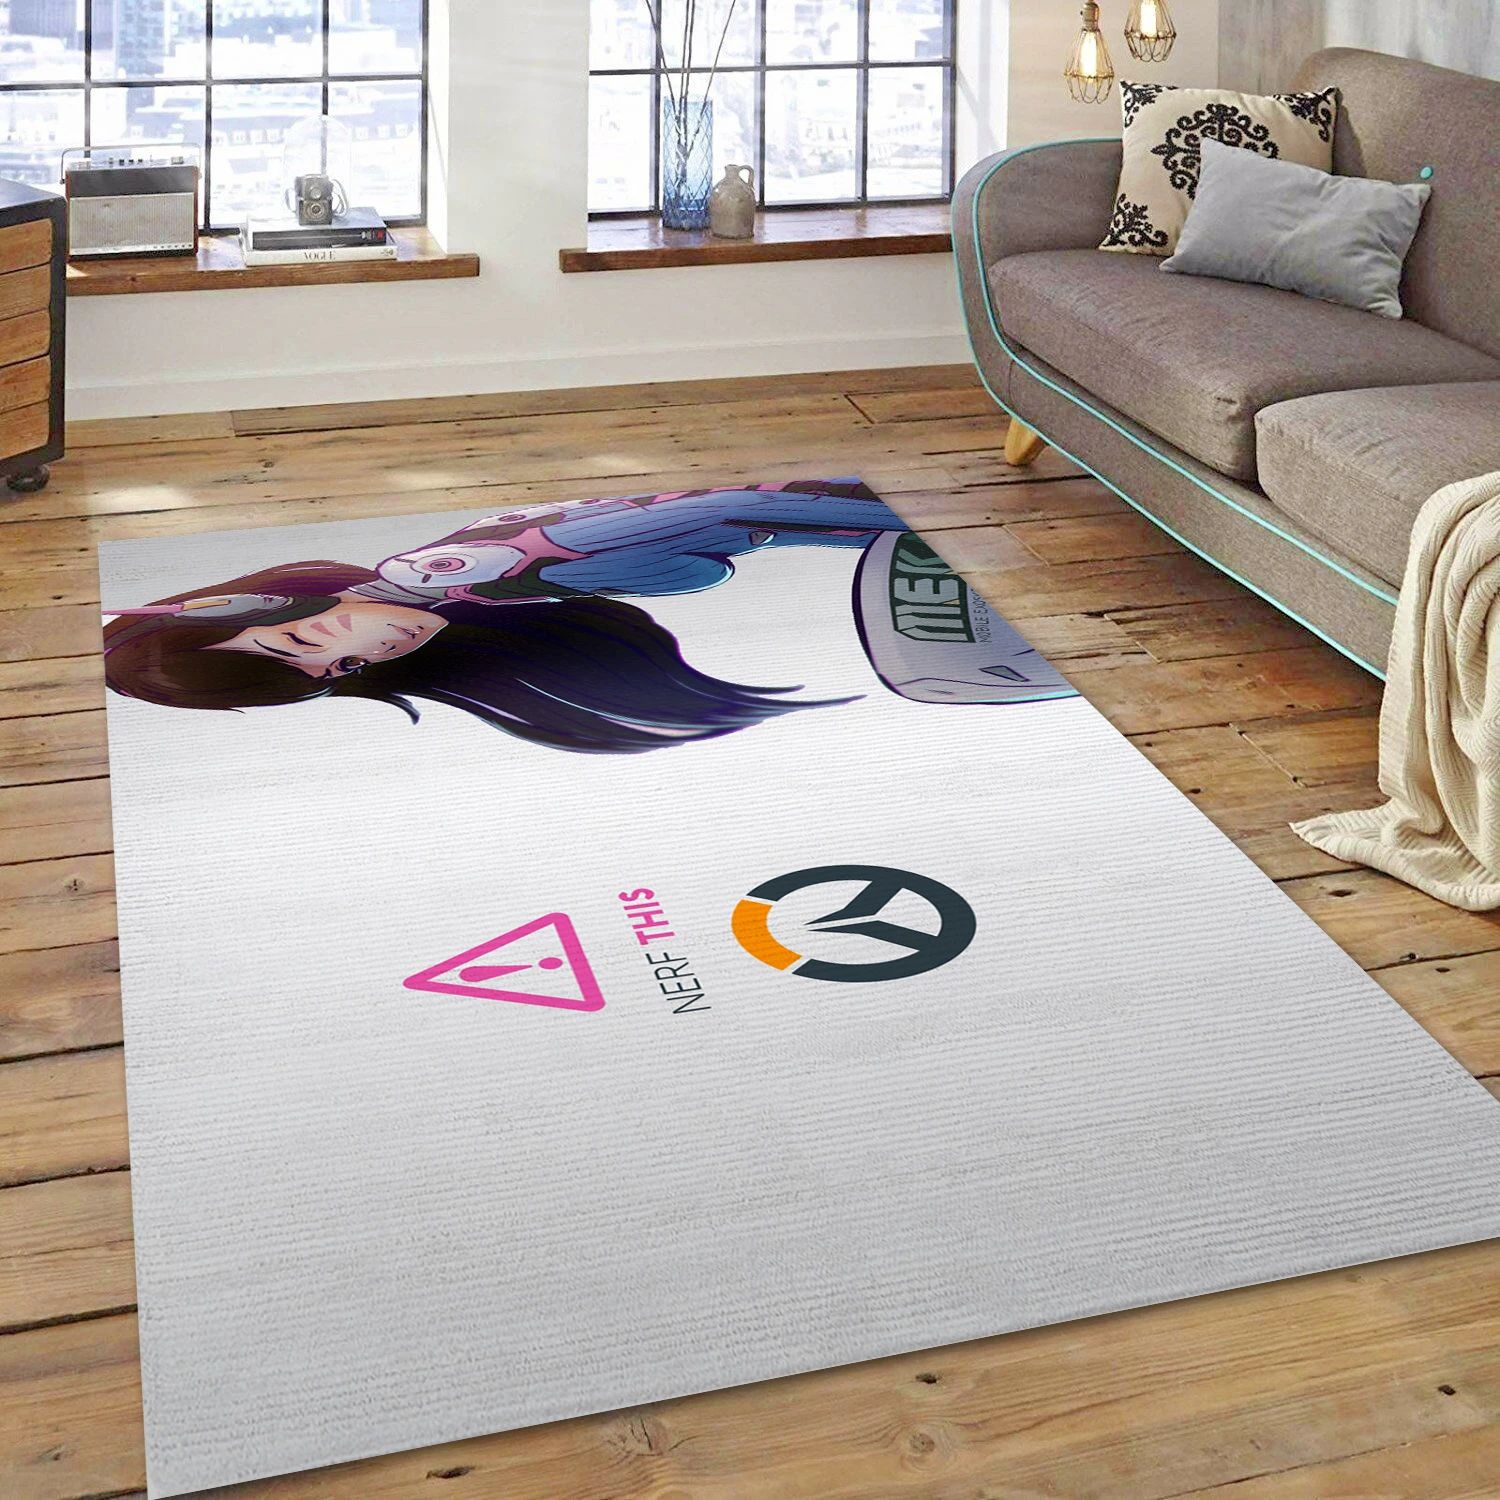 D Va Overwatch Game Area Rug Carpet, Bedroom Rug - Family Gift US Decor - Indoor Outdoor Rugs